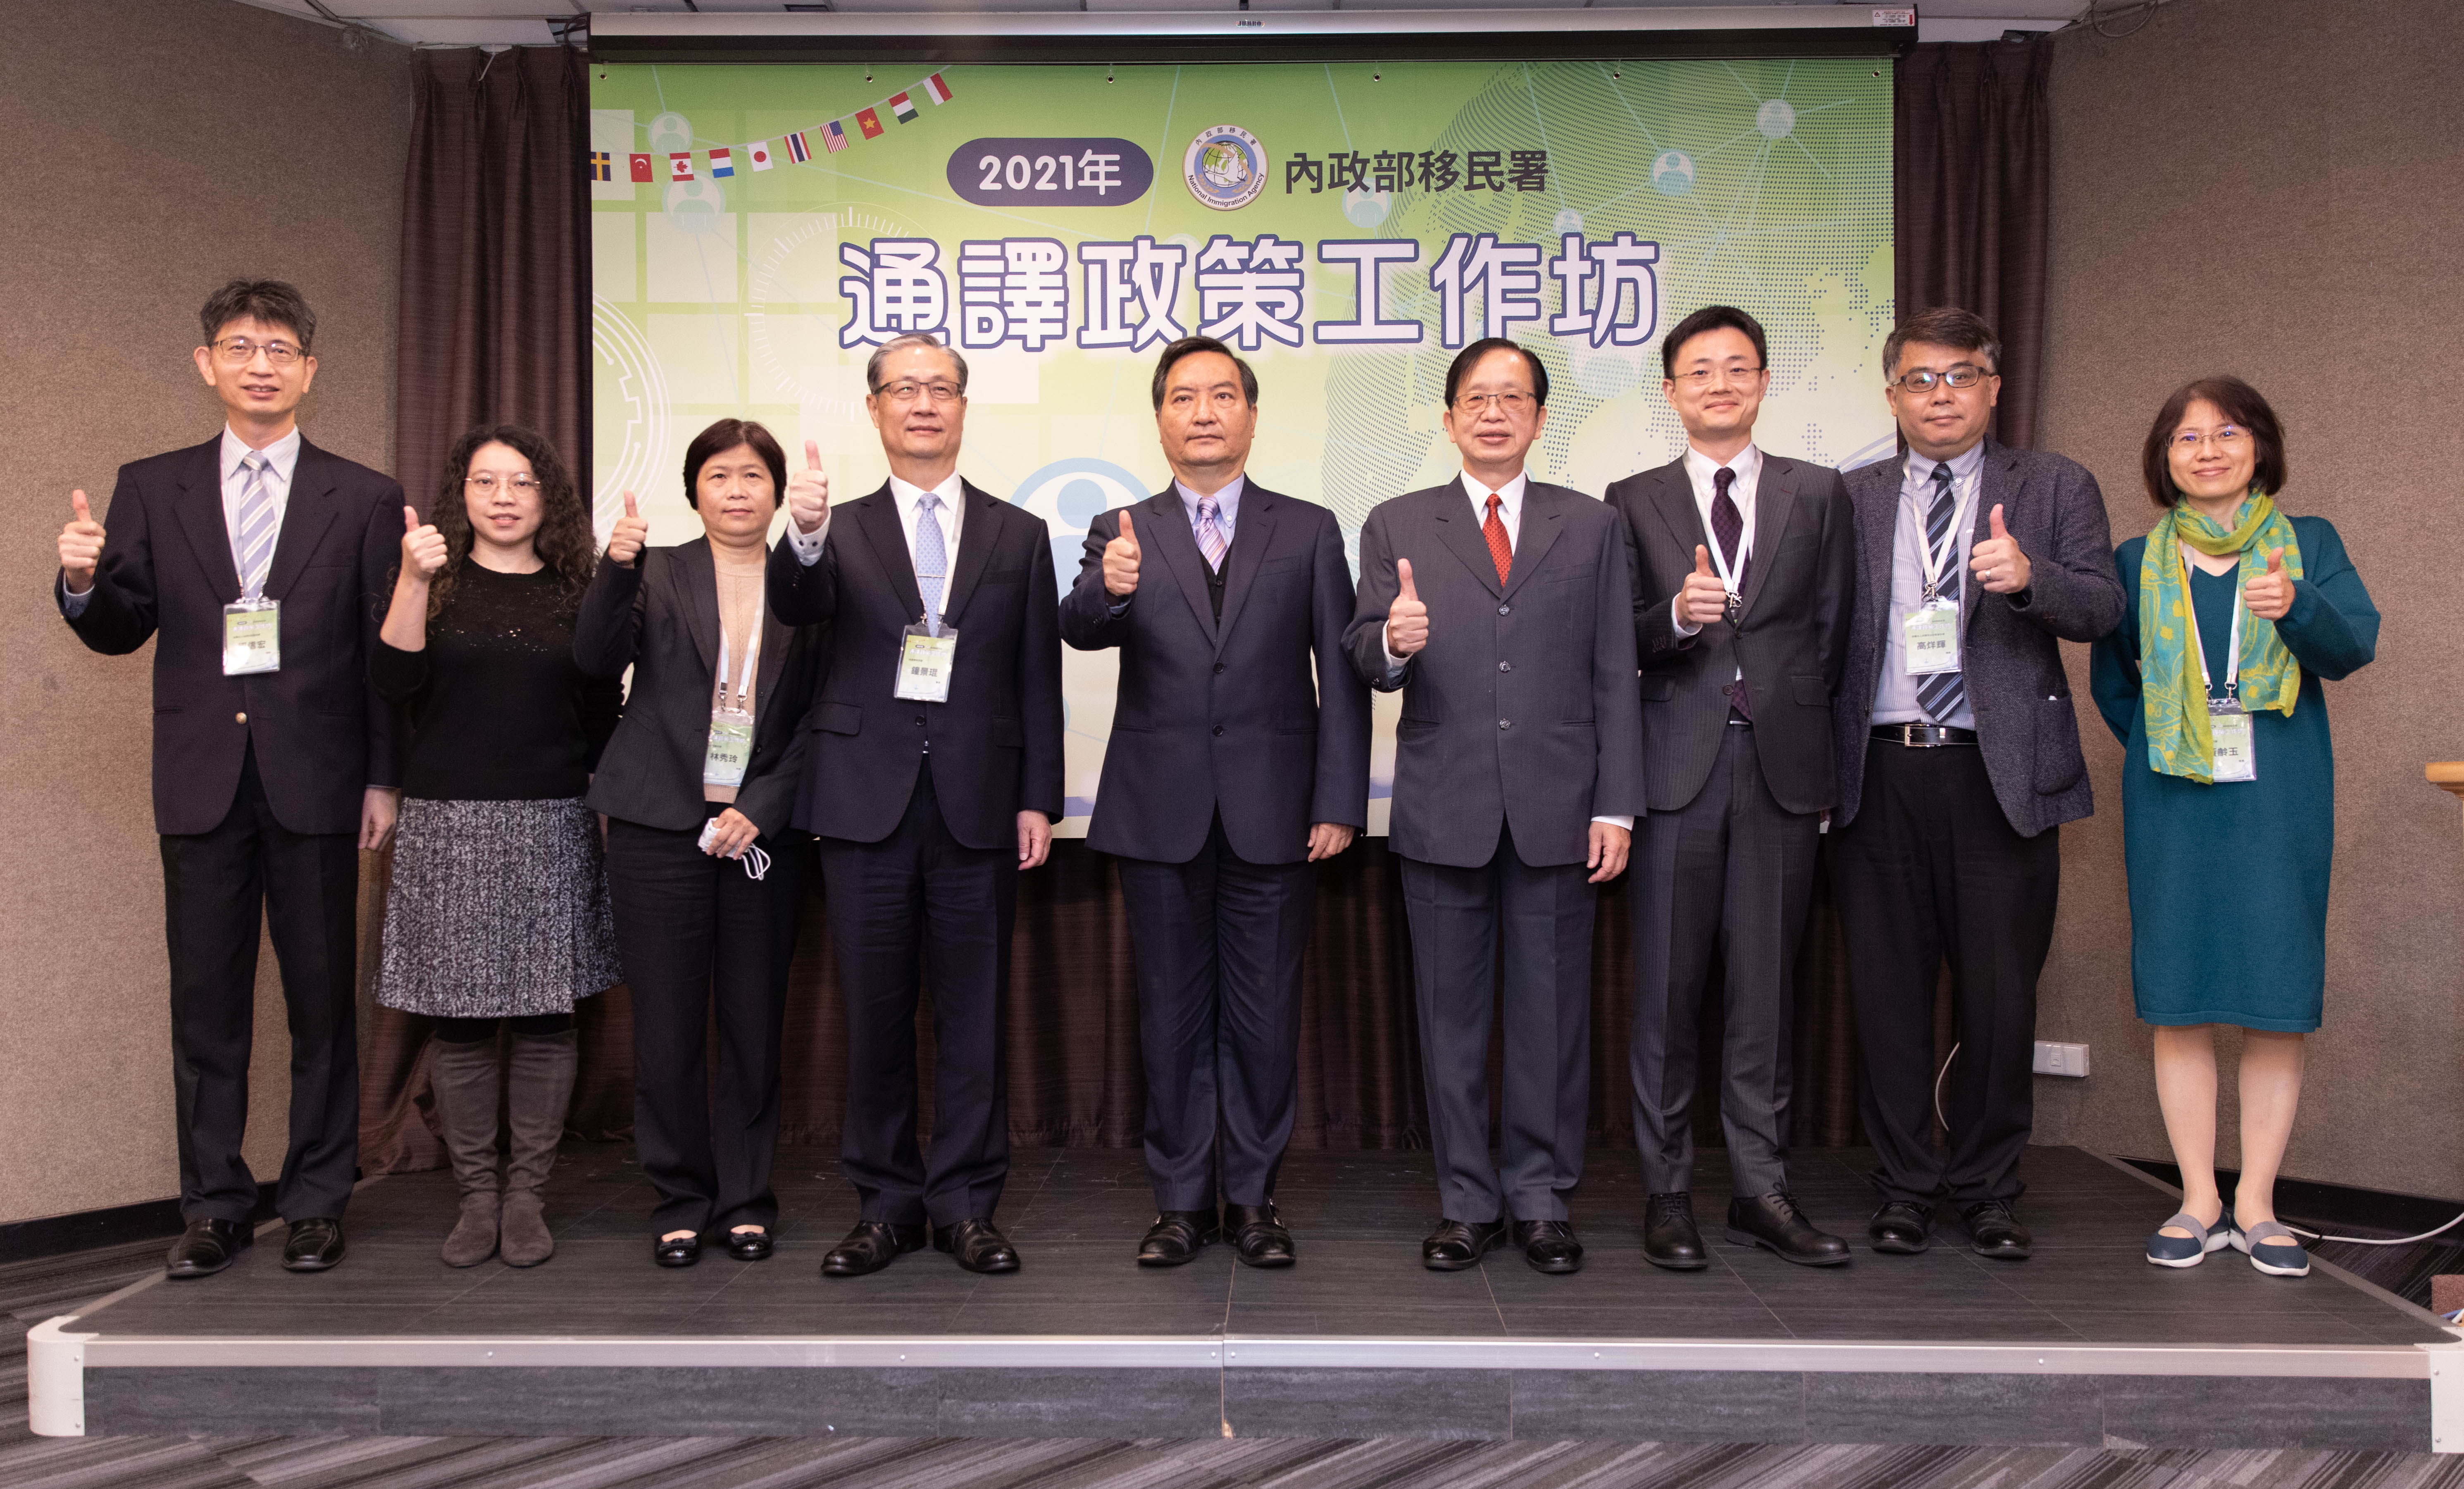 Giám đốc Sở Di dân Chung Cảnh Côn (thứ 4 bên trái), Quốc vụ khanh La Bỉnh Thành (giữa), Thứ trưởng thường vụ Bộ Nội chính Khưu Xương Nhạc (thứ 4 bên phải) cùng tham gia Hội thảo Chính sách thông dịch năm 2021. (Nguồn ảnh: Bộ Nội chính Đài Loan)